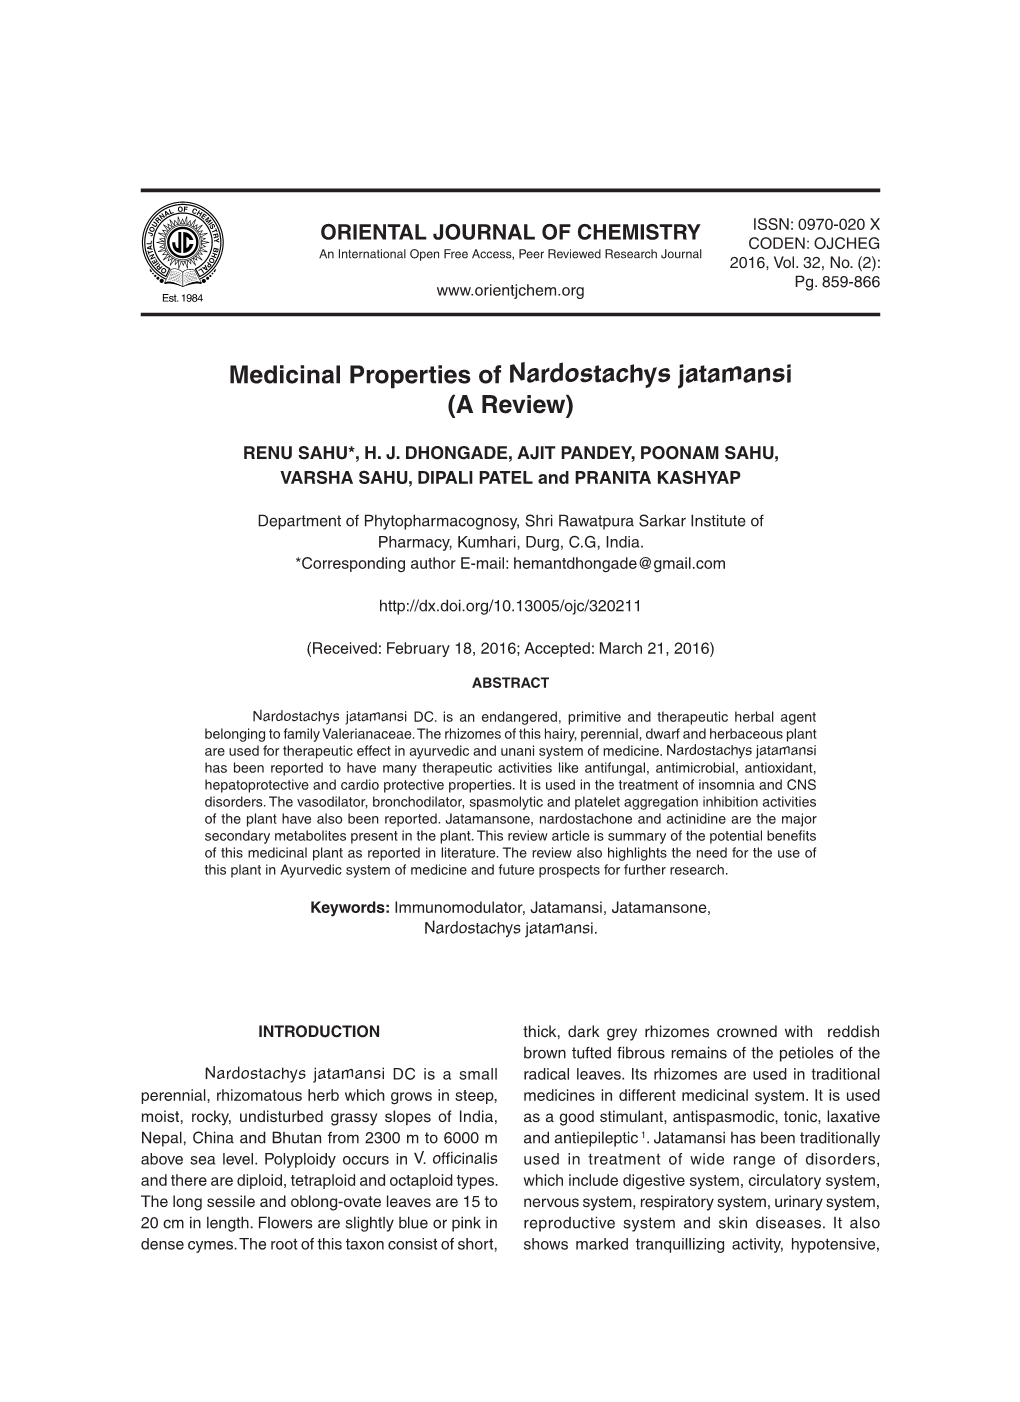 Medicinal Properties of Nardostachys Jatamansi (A Review)